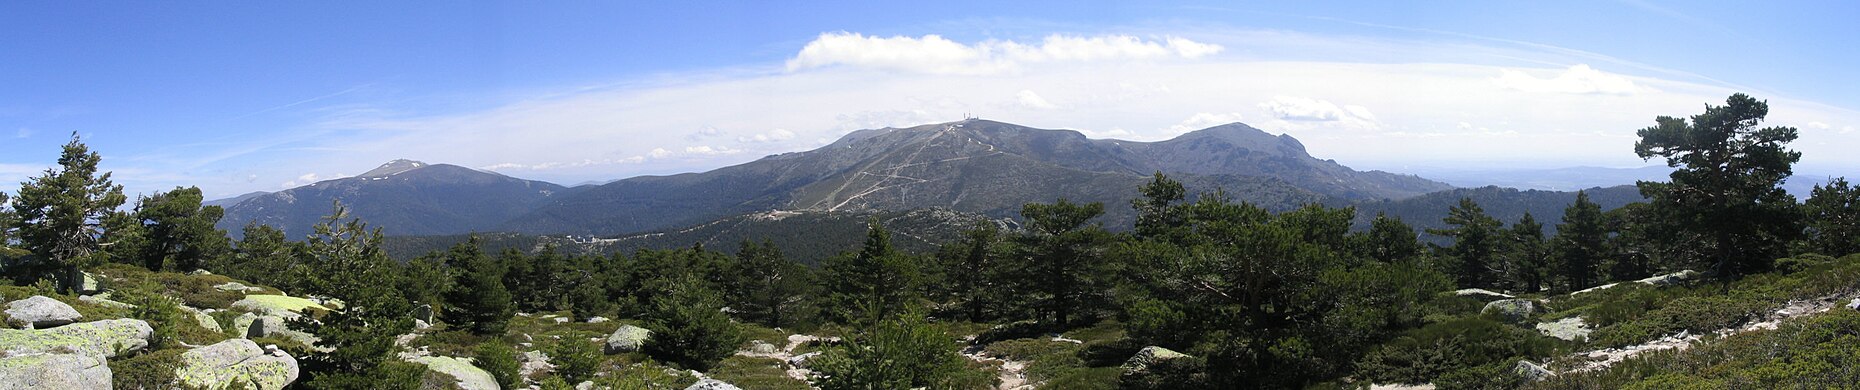 Español: De izquierda a derecha se aprecia el pico de Peñalara (2.430 m), el puerto de Cotos (1.830 m), la Bola del Mundo (2.268 m) y La Maliciosa (2.227 m). Imagen tomada cerca de la cima de Siete Picos.